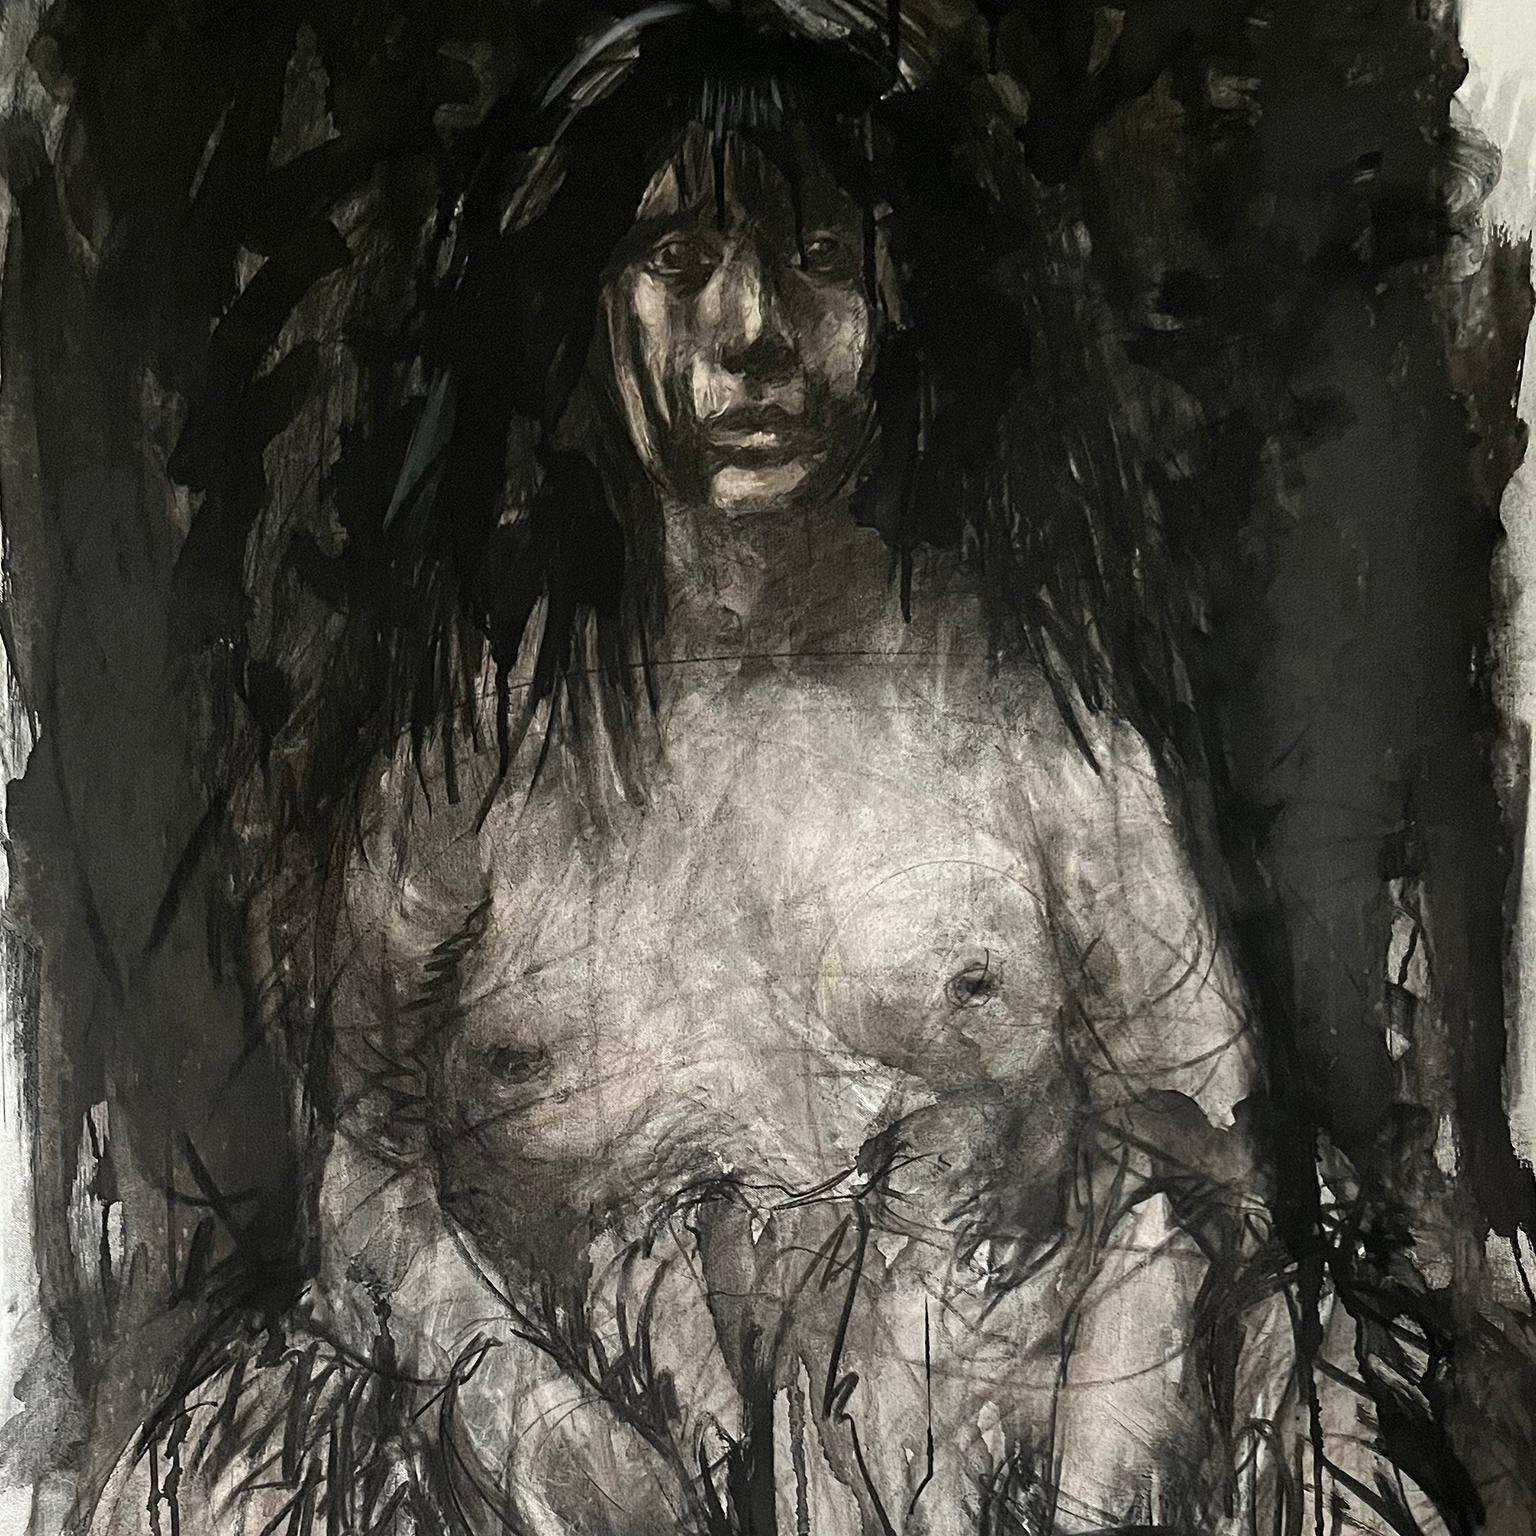 Schöne Malerei einer Frau in schwarzer Kohle und Tinte auf Leinwand von niederländischen Künstlers. Die Abmessungen betragen 215 cm Länge x 97 cm Breite, befestigt an einem 110 cm langen Holz.

Für den Transport auf einer Rolle mit einem Durchmesser